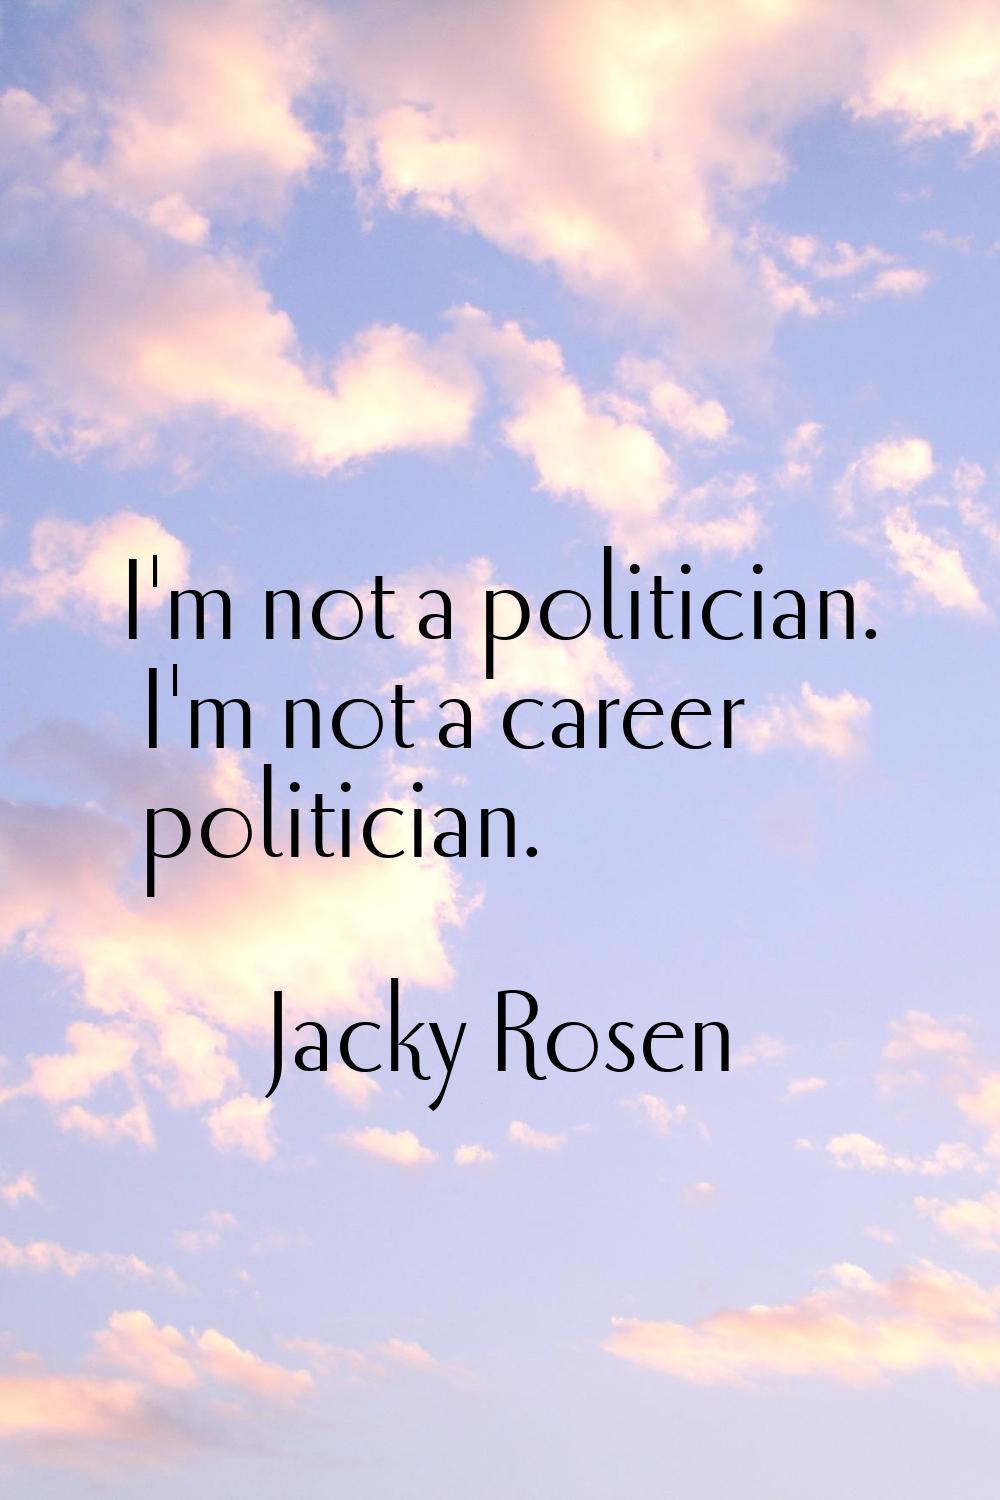 I'm not a politician. I'm not a career politician.